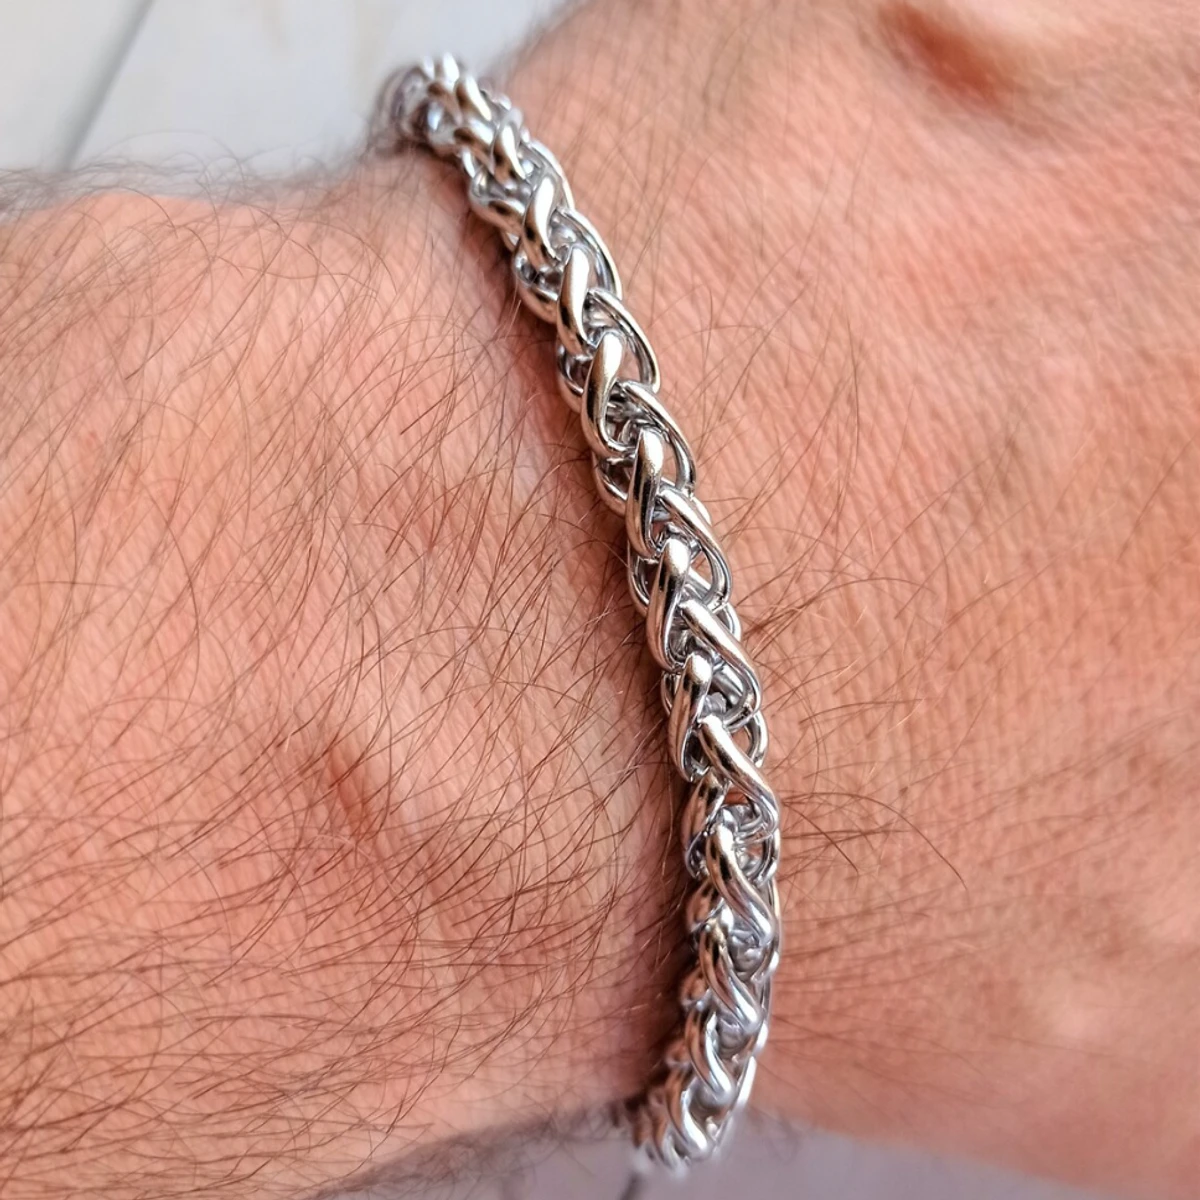 Fashionable Rofe Chain Bracelet For Men- Silver